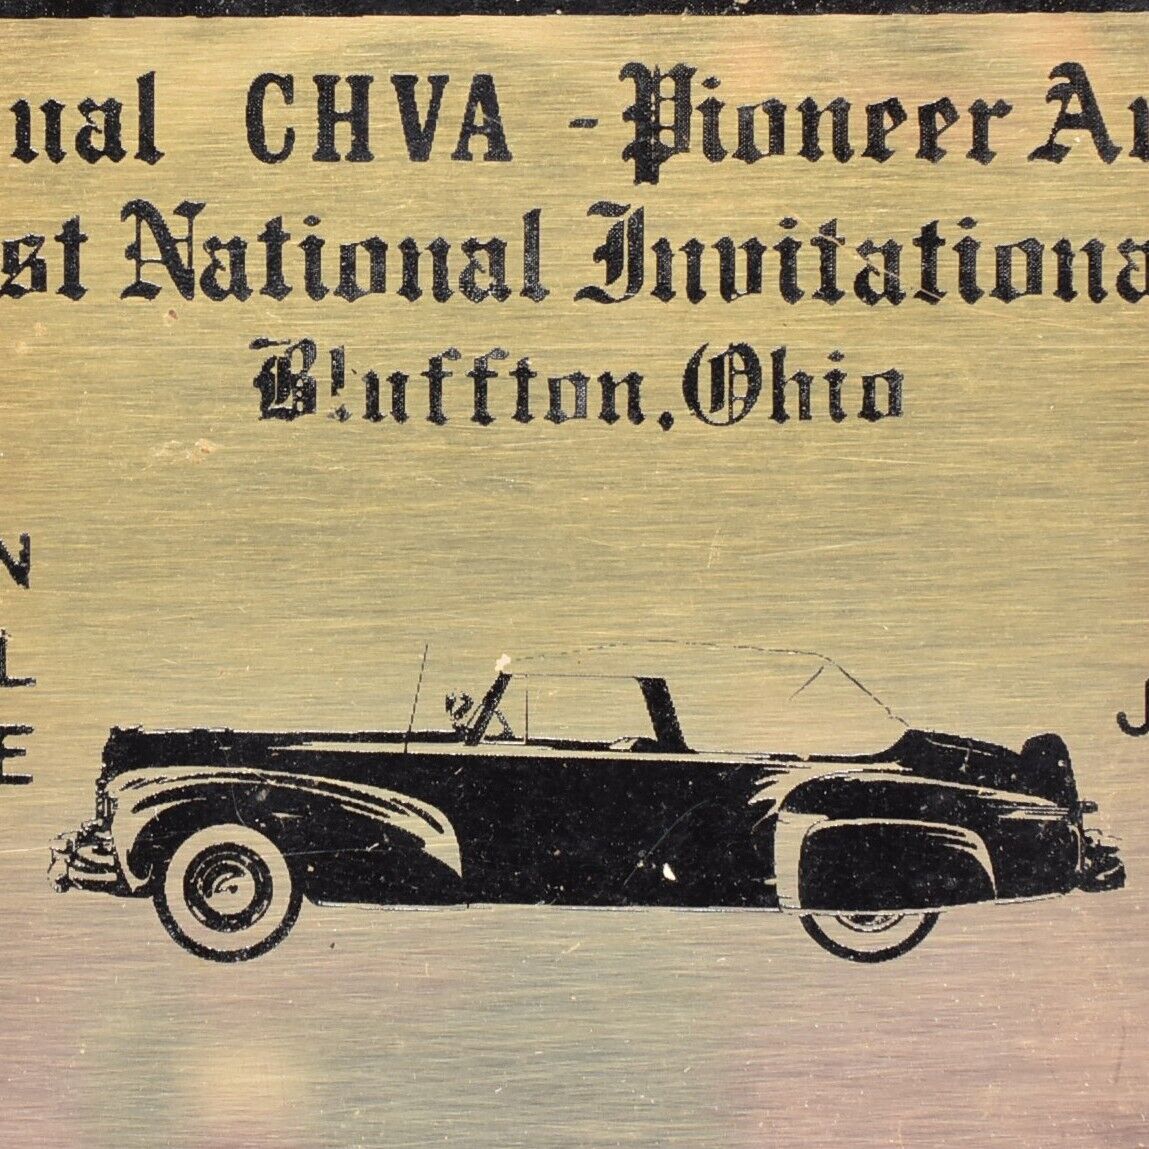 1974 CHVA Pioneer Auto Club 1946 Lincoln Continental Coupe Bluffton Shannon Ohio